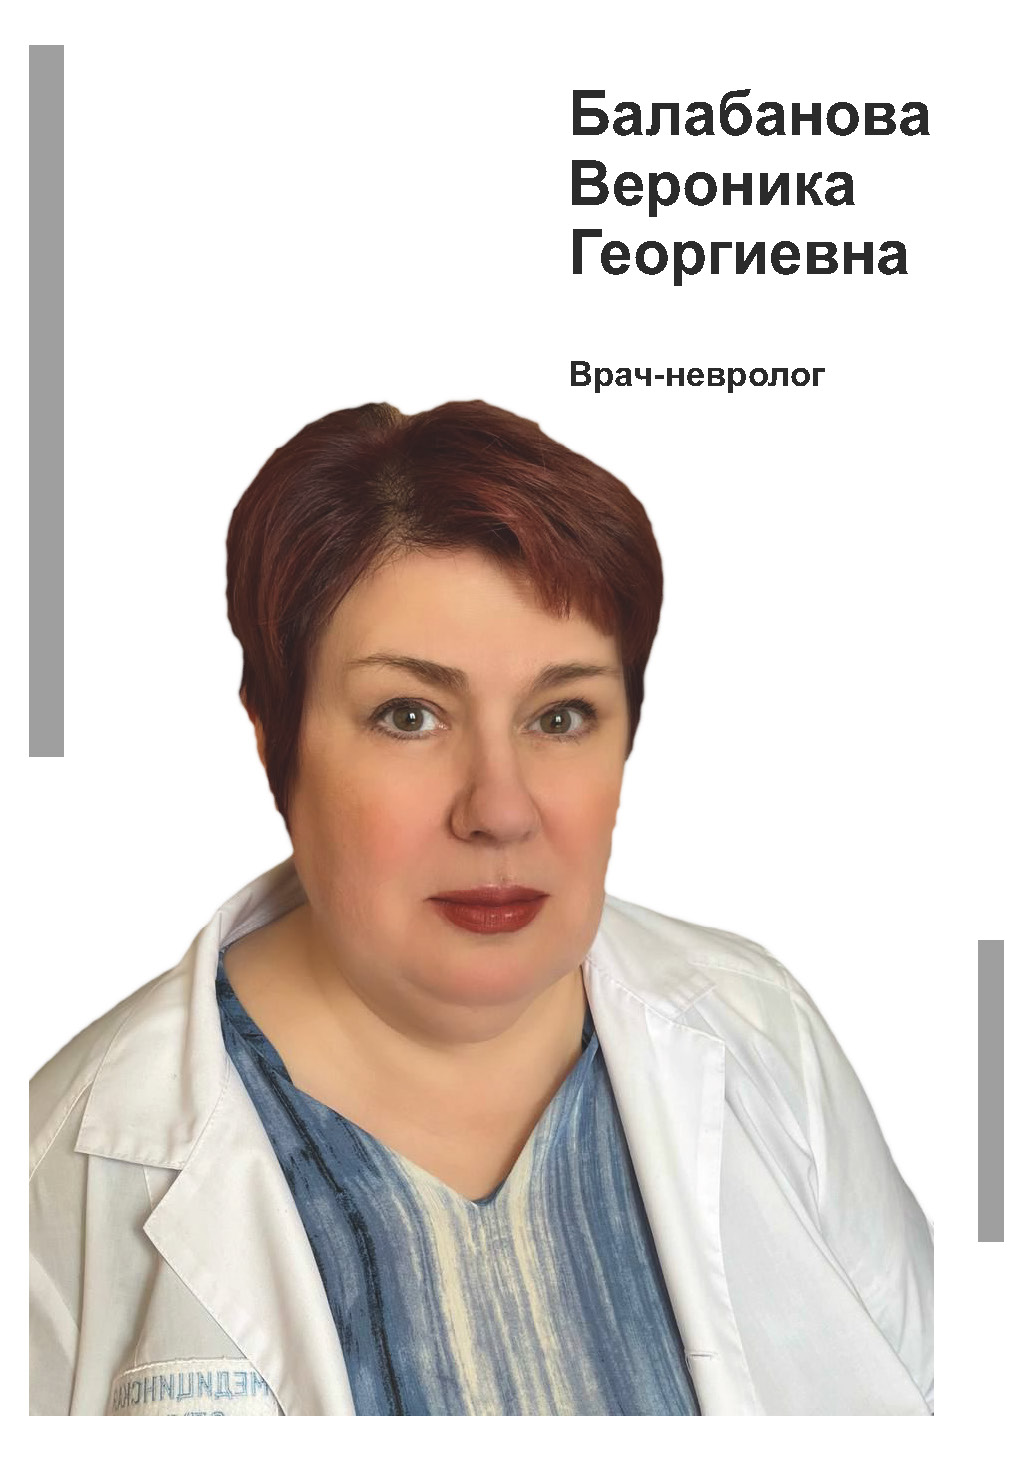 Балабанова Вероника Георгиевна - невролог в клинике Lezaffe г. Югорск